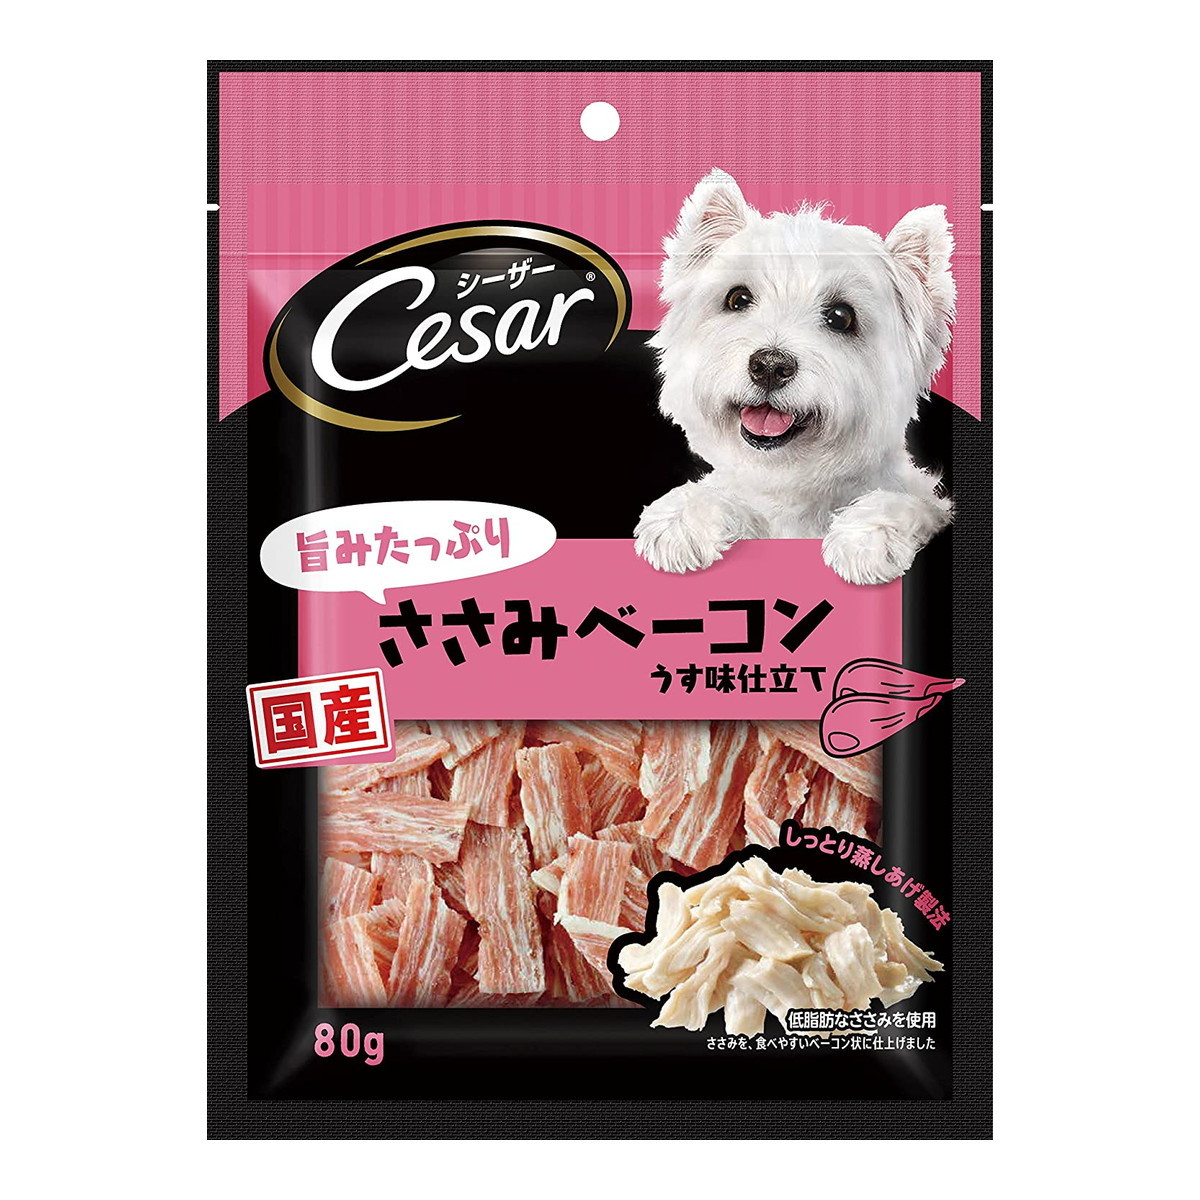 MARS（ペット用品、食品） シーザー 旨みたっぷりささみベーコン 80g×2個 シーザー 犬用おやつ、ガムの商品画像